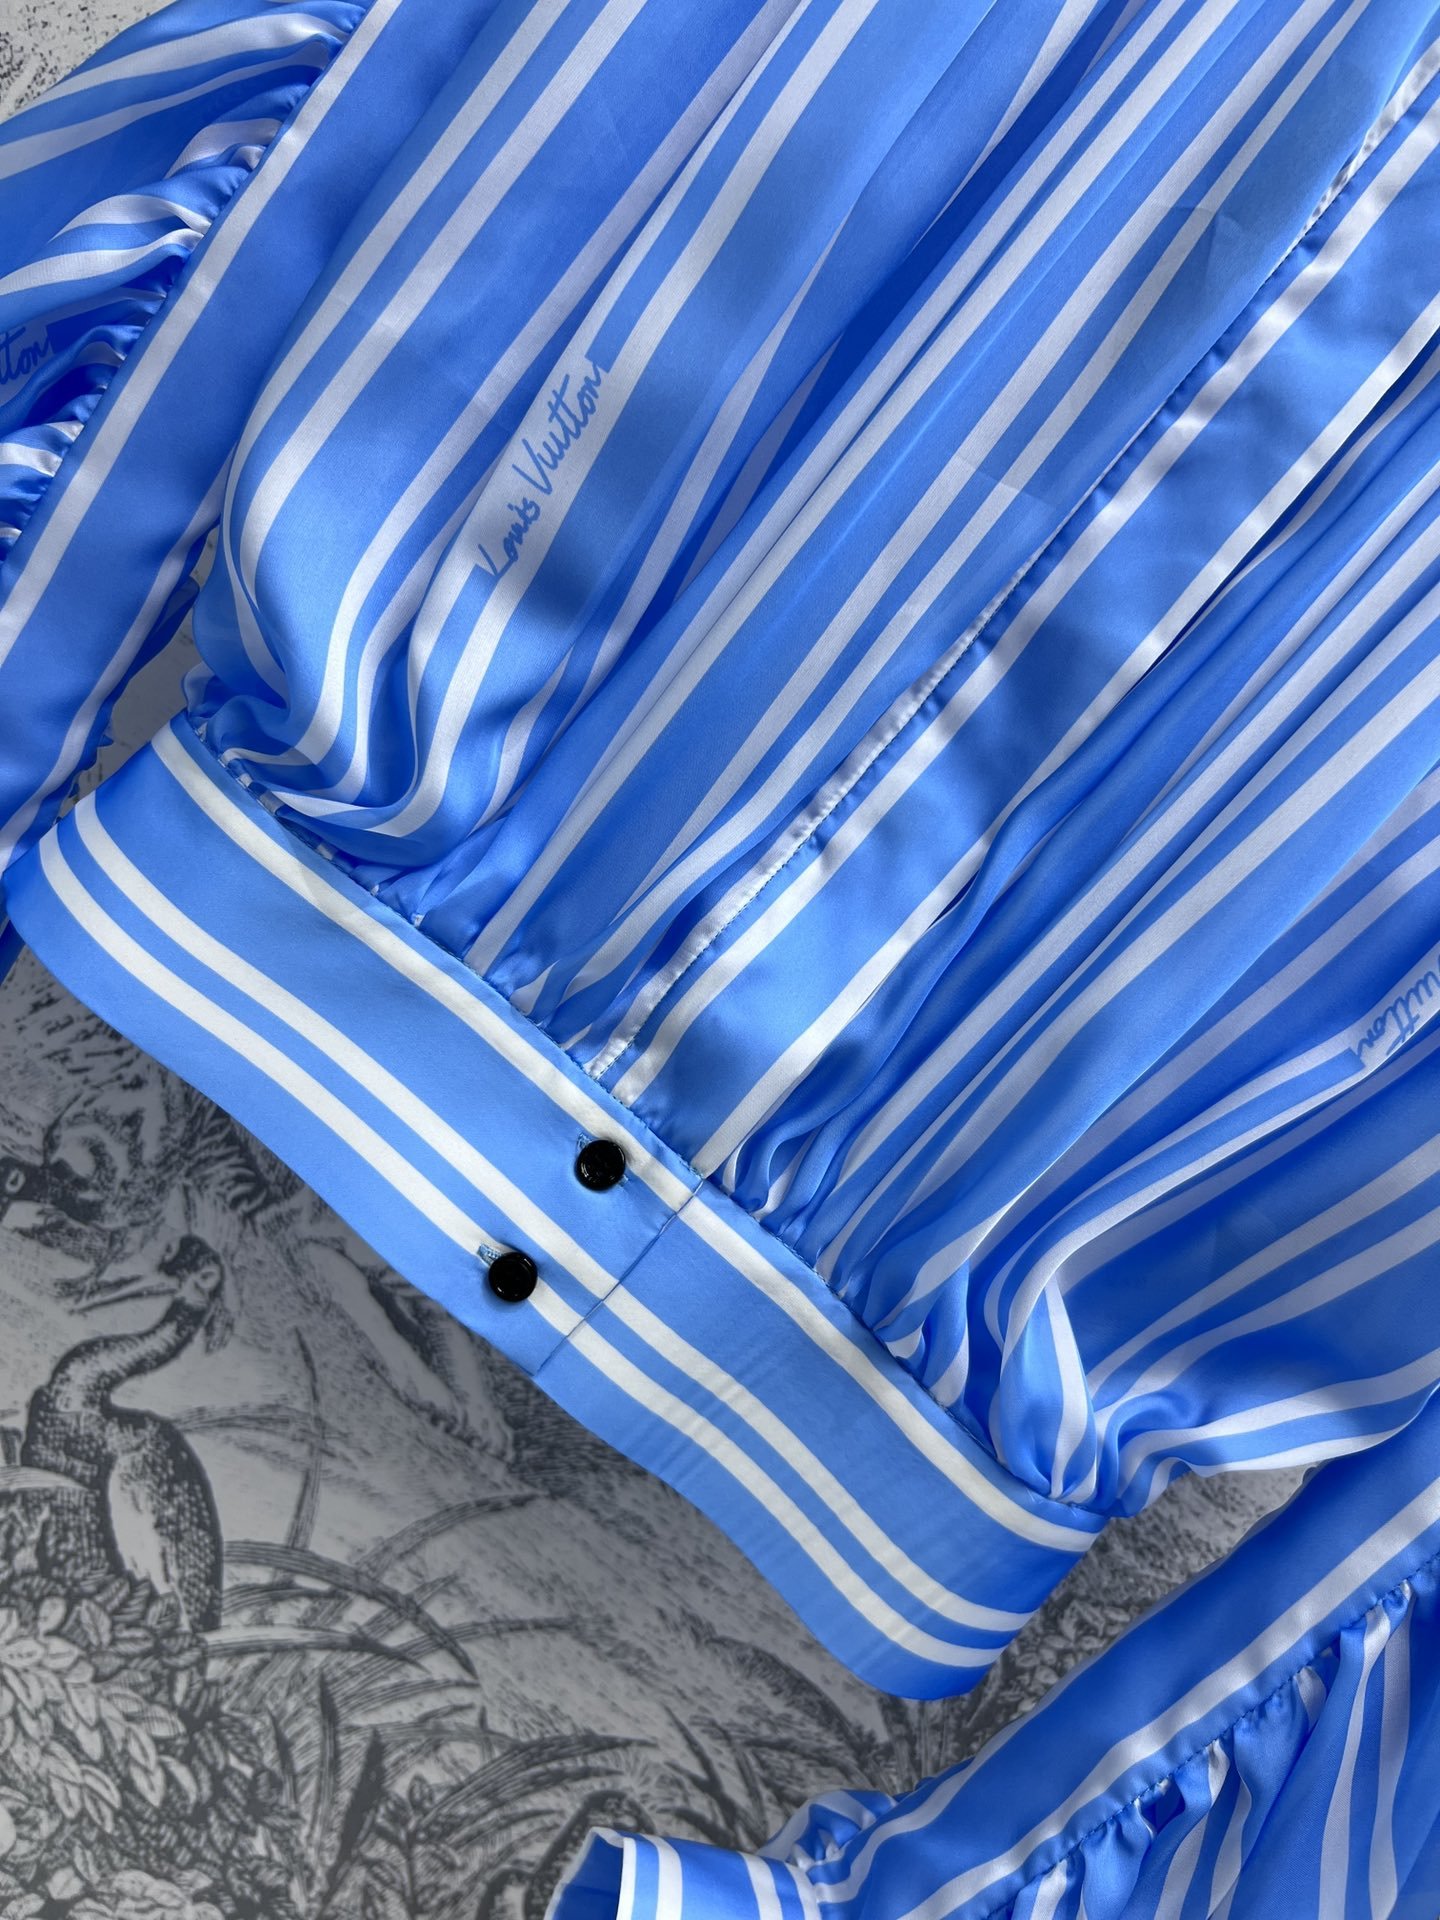 L家24春夏秀款系列双条纹束褶衬衫整件采用垂坠束褶设计非常讲究做工可立领可翻领的落肩款版型勾勒出精致流丽